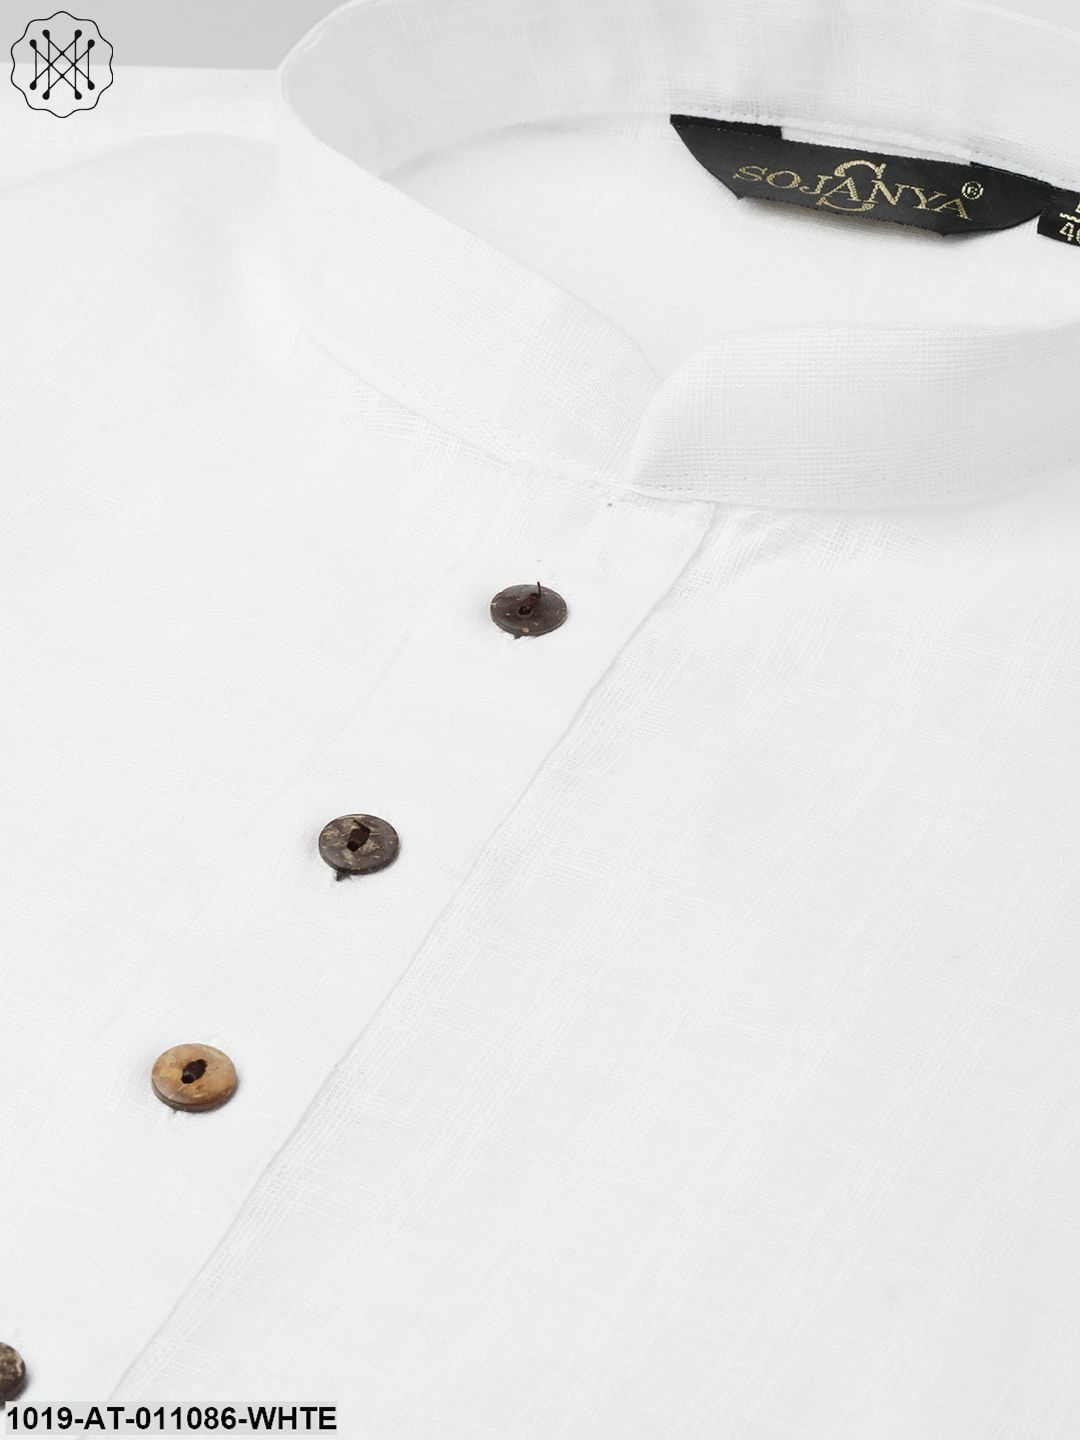 Men's Cotton Blend White Woven Design Only Long Kurta - Sojanya